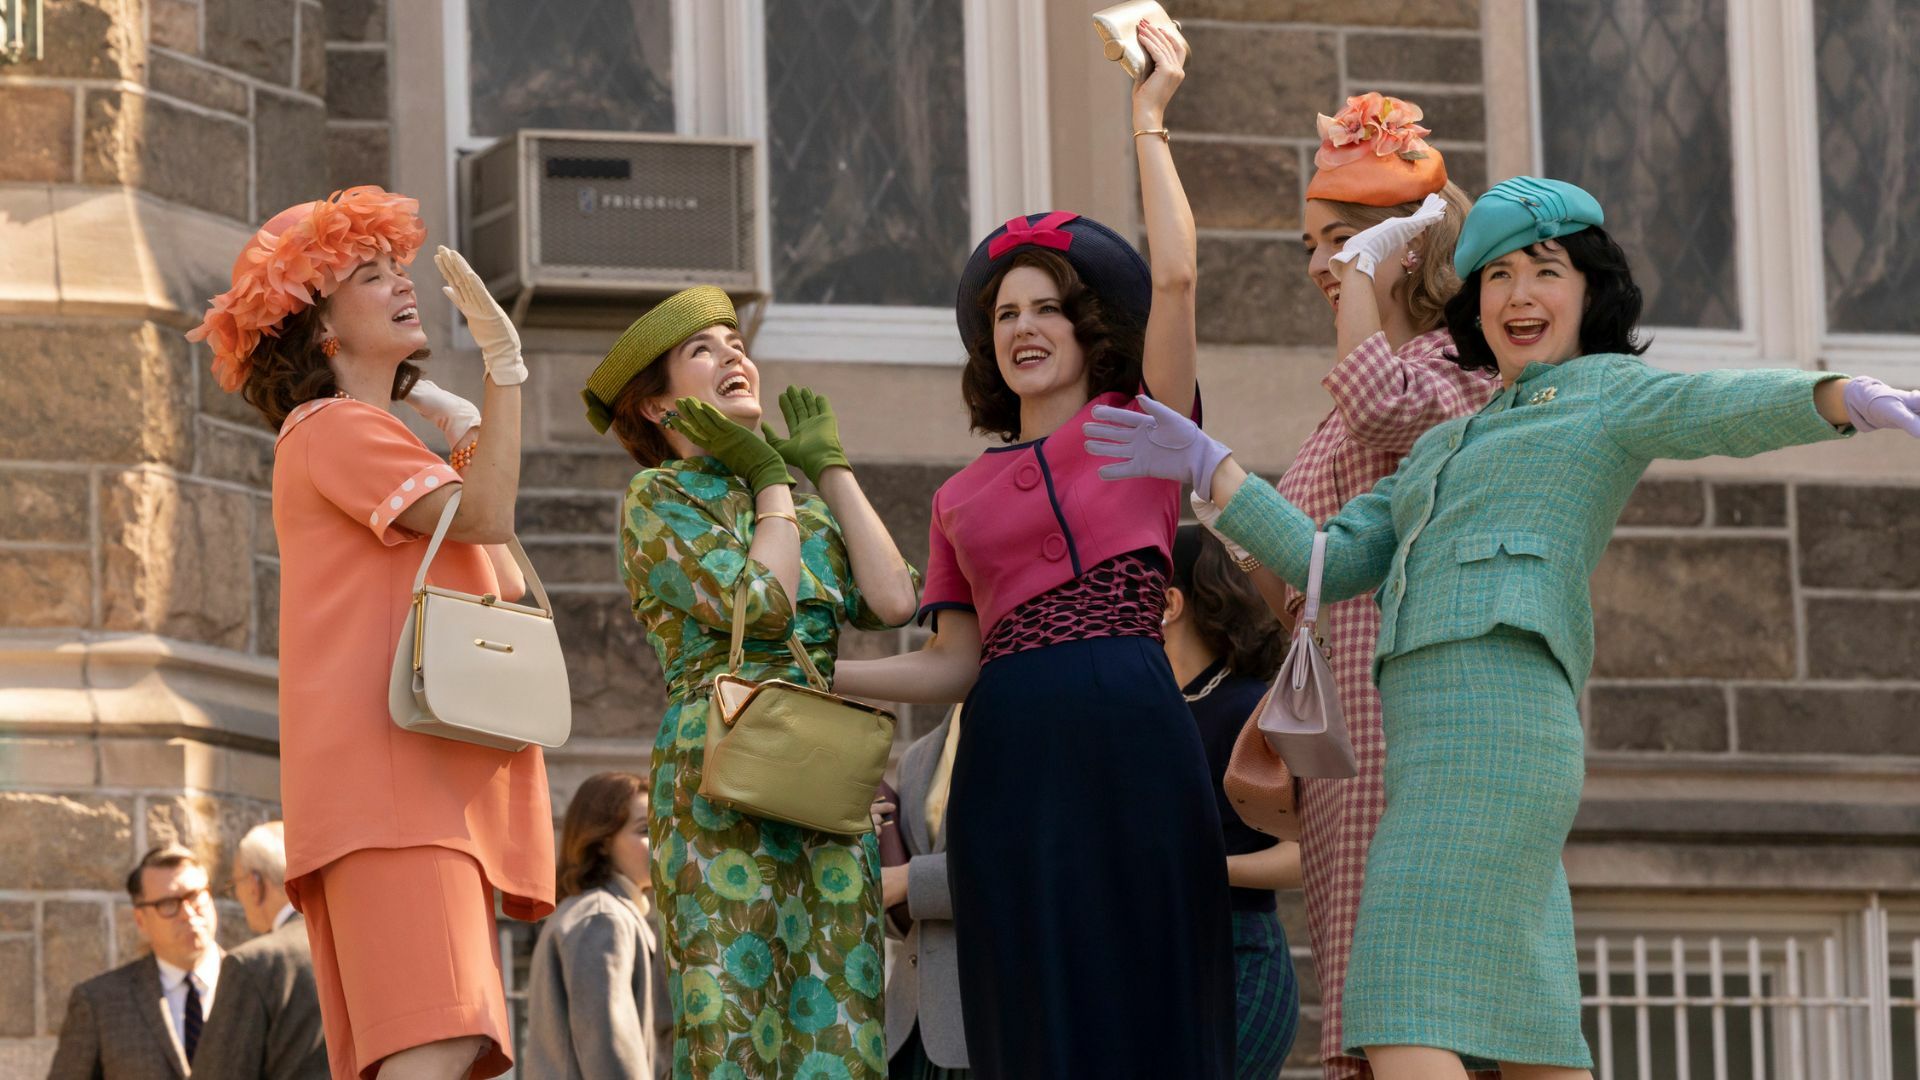 Women in vibrant '60s attire celebrate. 